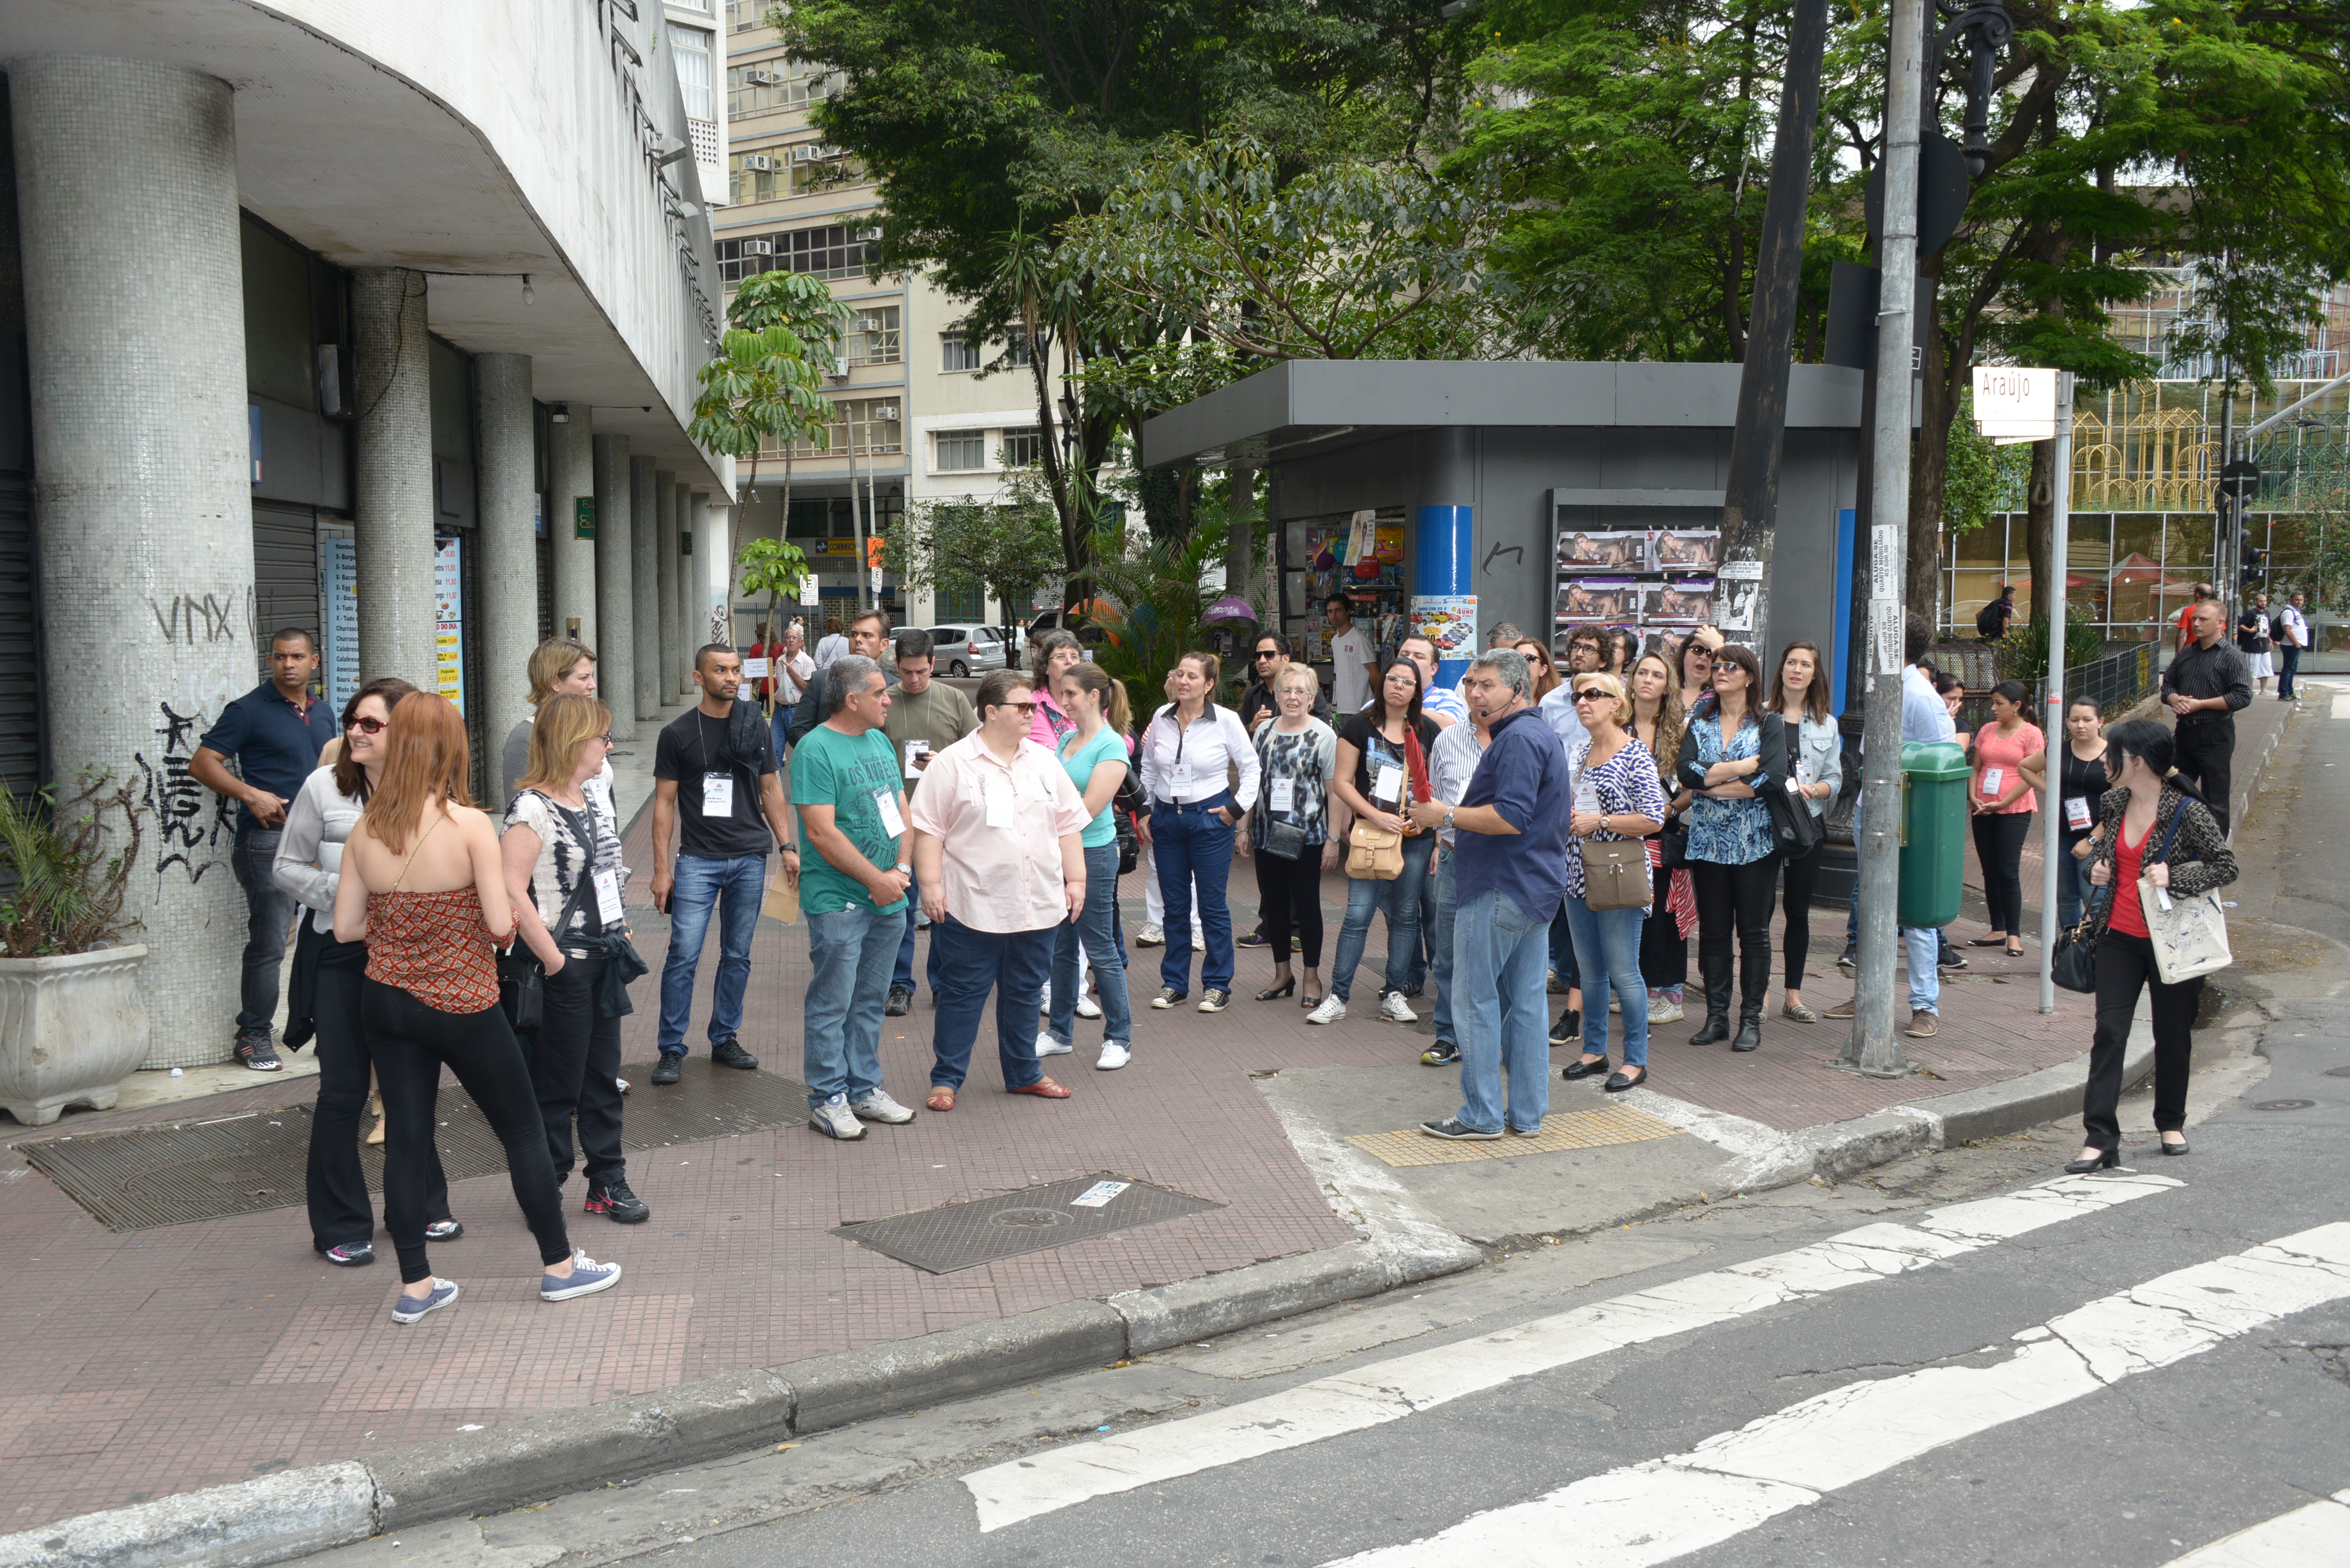 Hotelaria e Desenvolvimento Urbano em São Paulo: 150 anos de história – Palestra e passeio pelo centro histórico de São Paulo